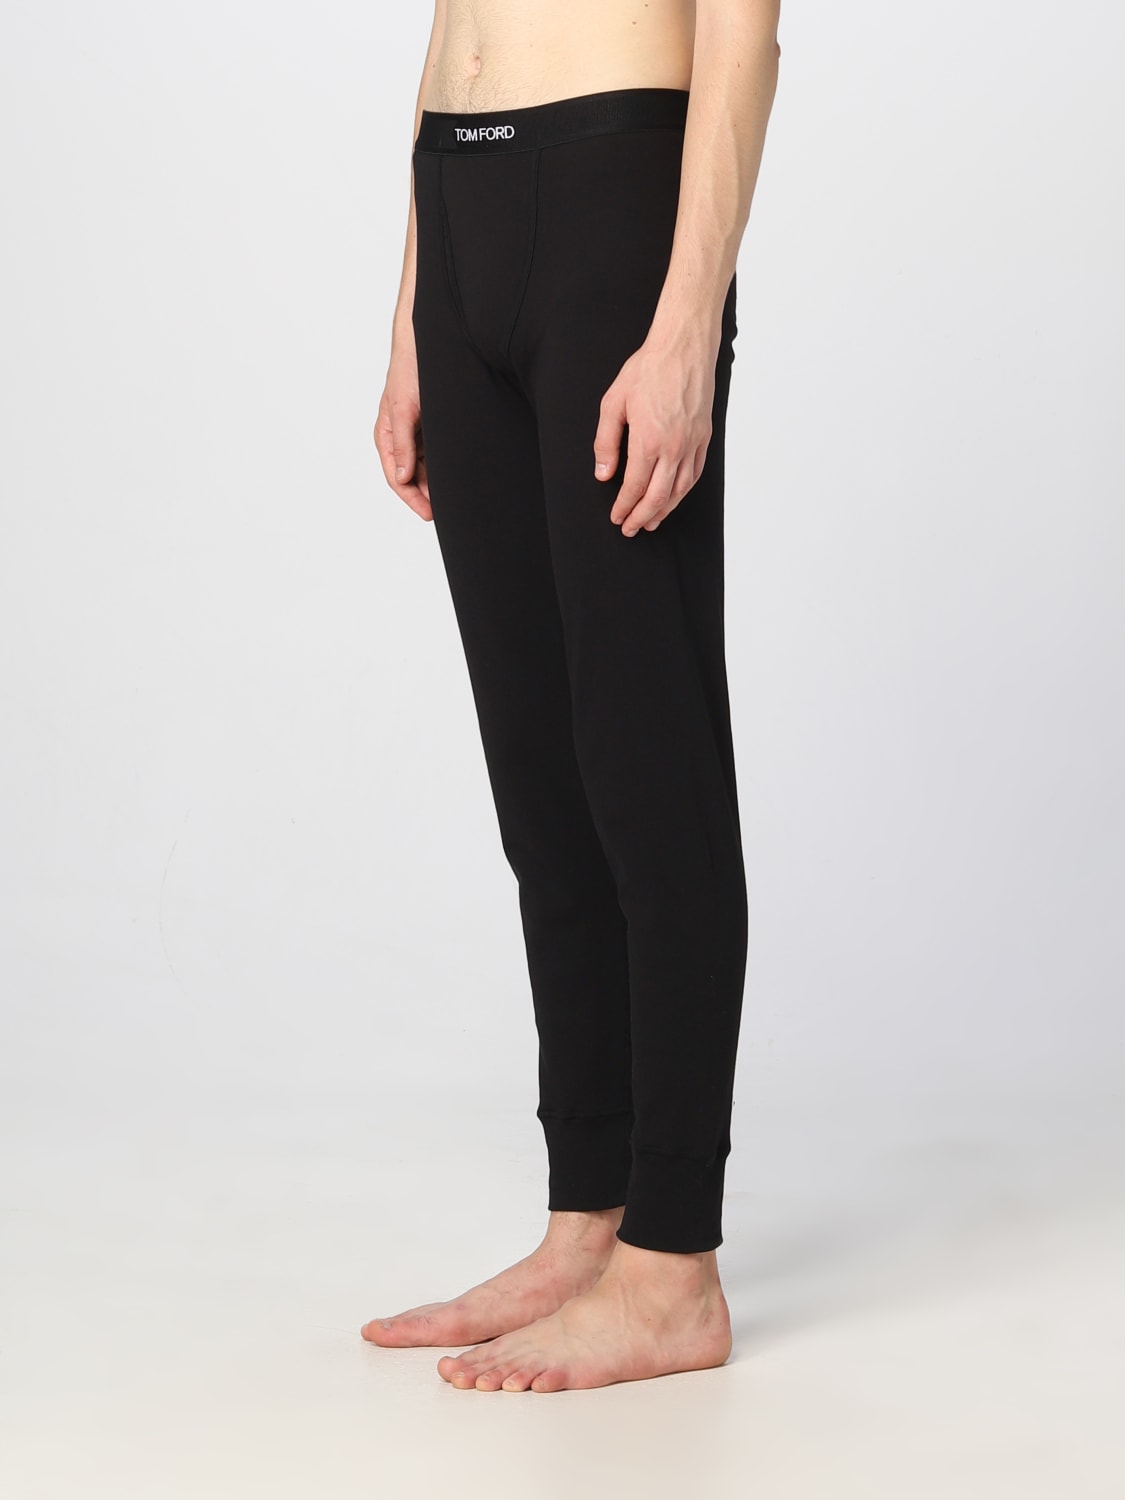 TOM FORD: cotton pajamas pants - Black | Tom Ford pajamas T4LM11040 ...